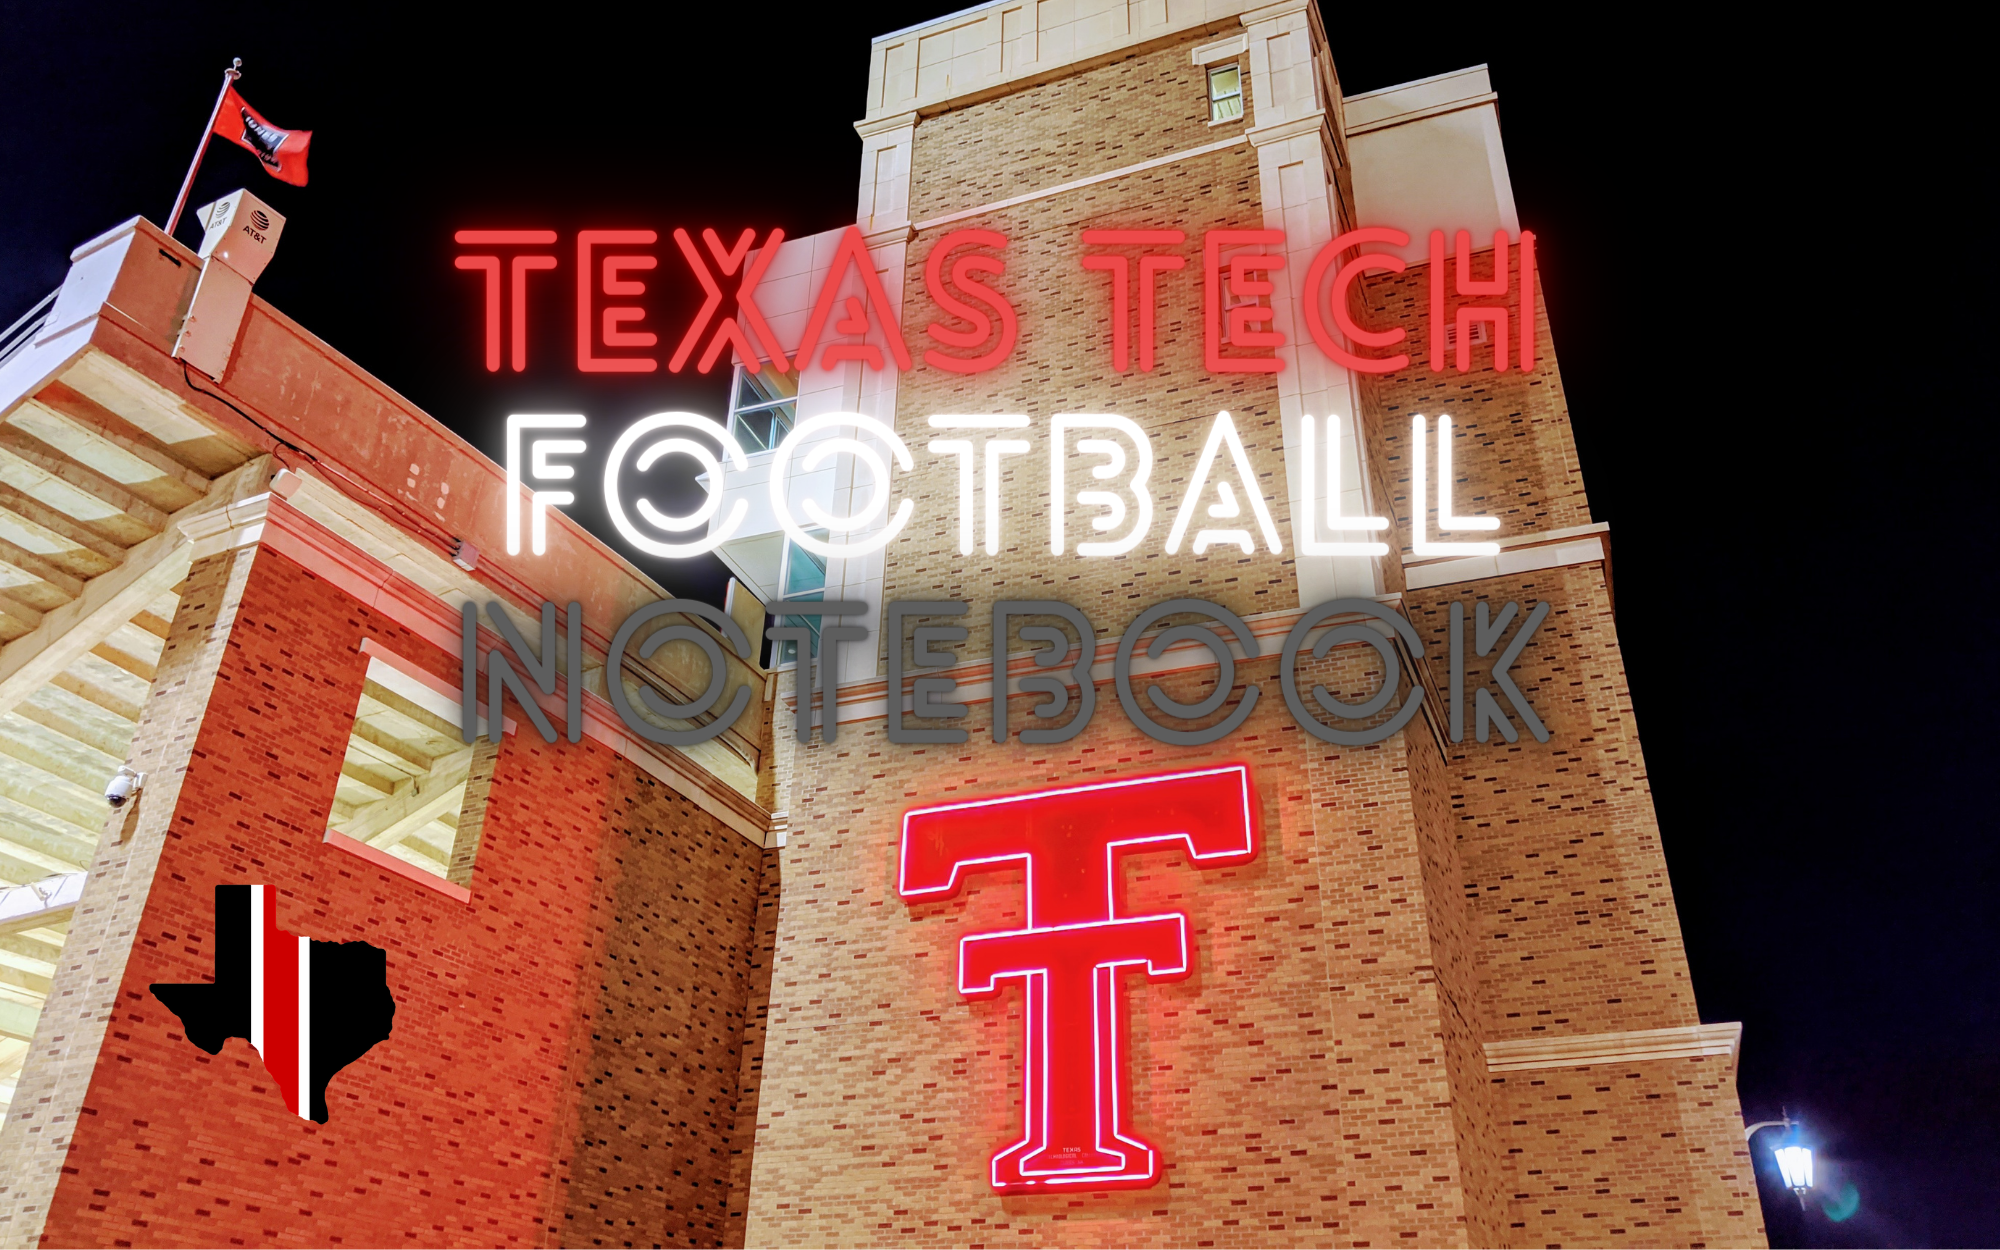 Texas Tech Football Notebook: Kittley Named Offensive Coordinator; Ewers Visits